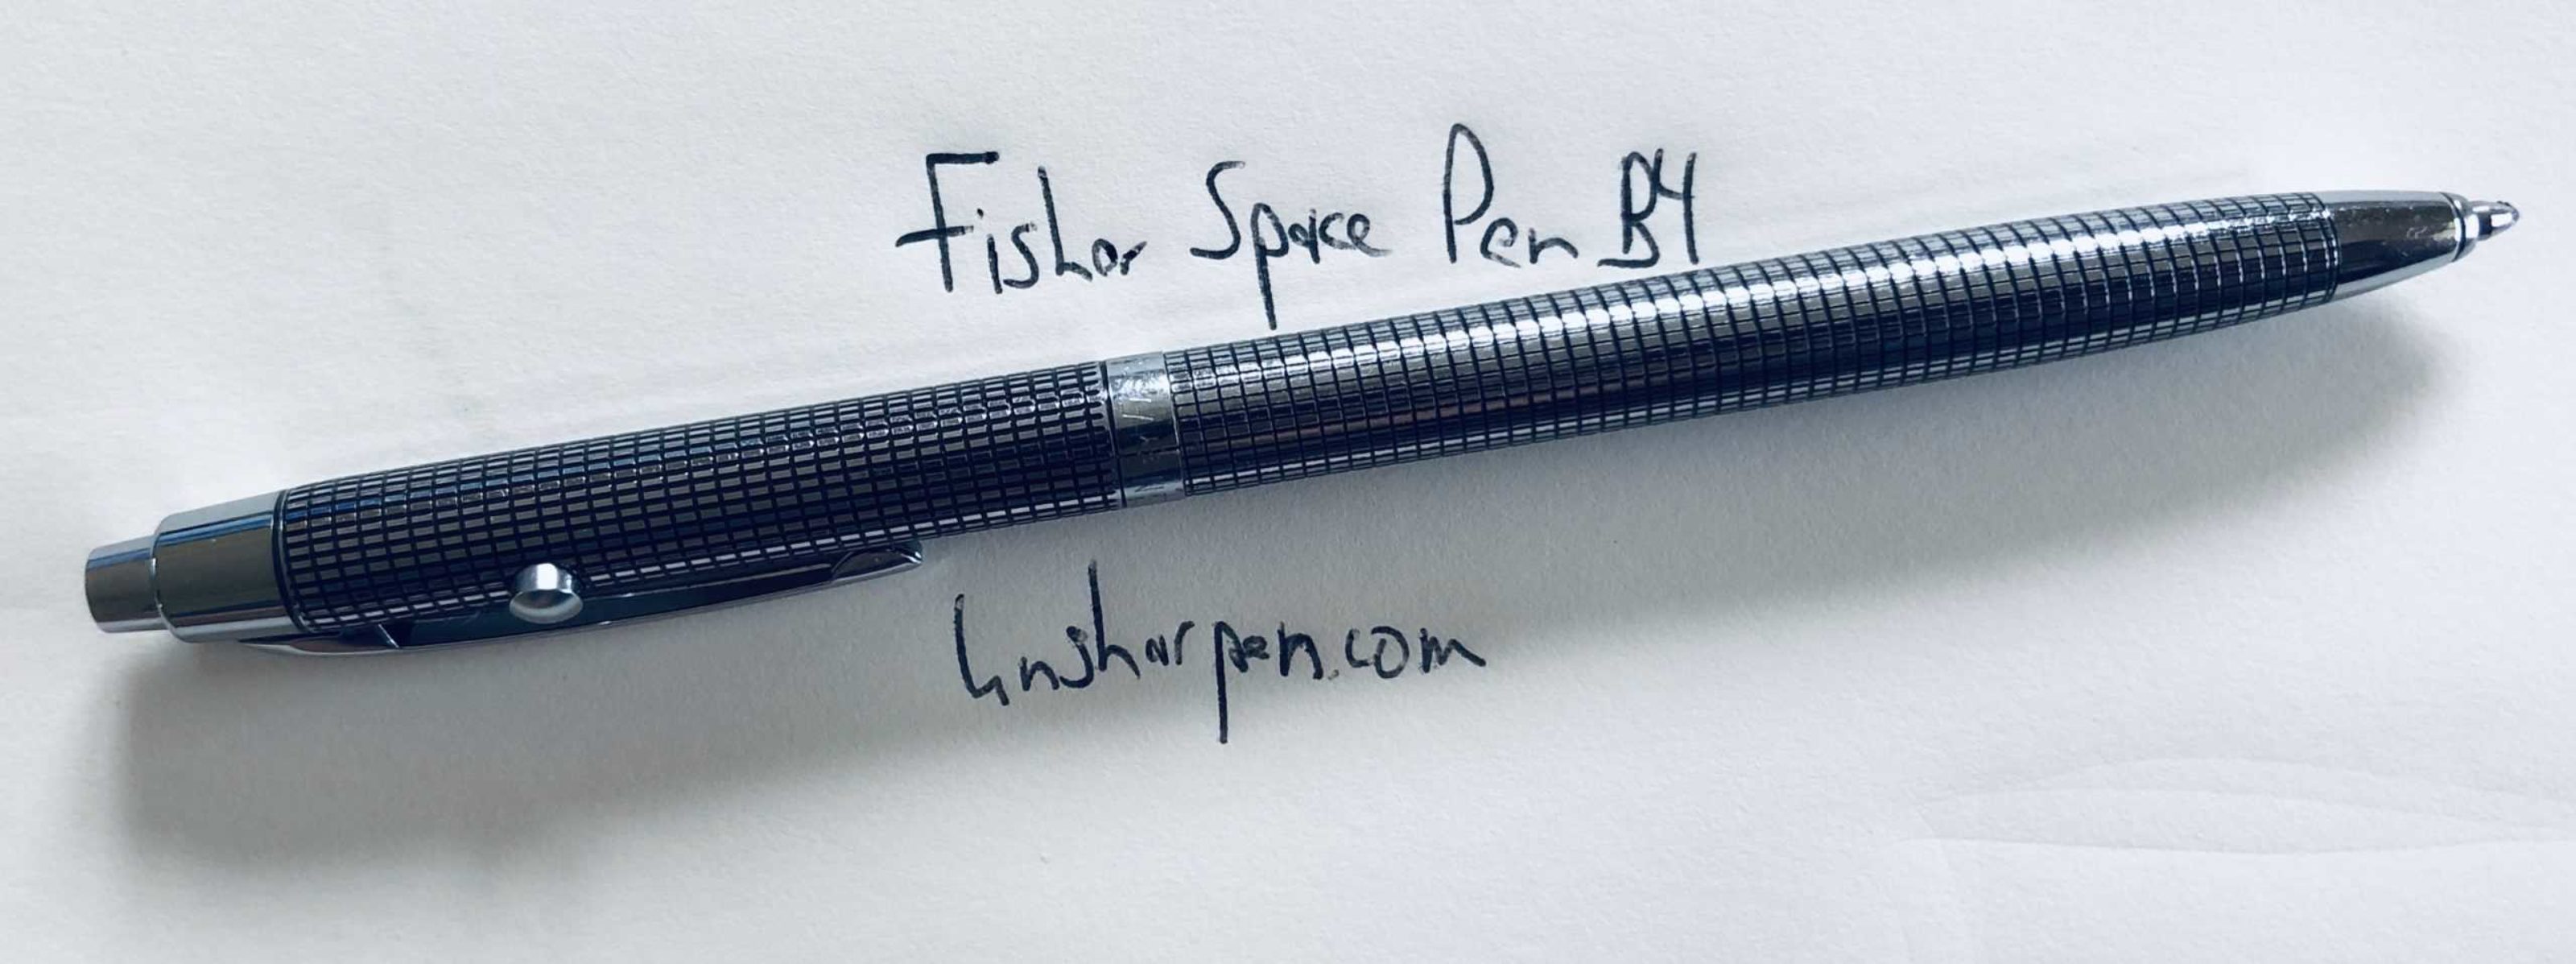 Shuttle Ballpoint Pen Golden Grid Design NEW in box G4 Fisher Space Pen 